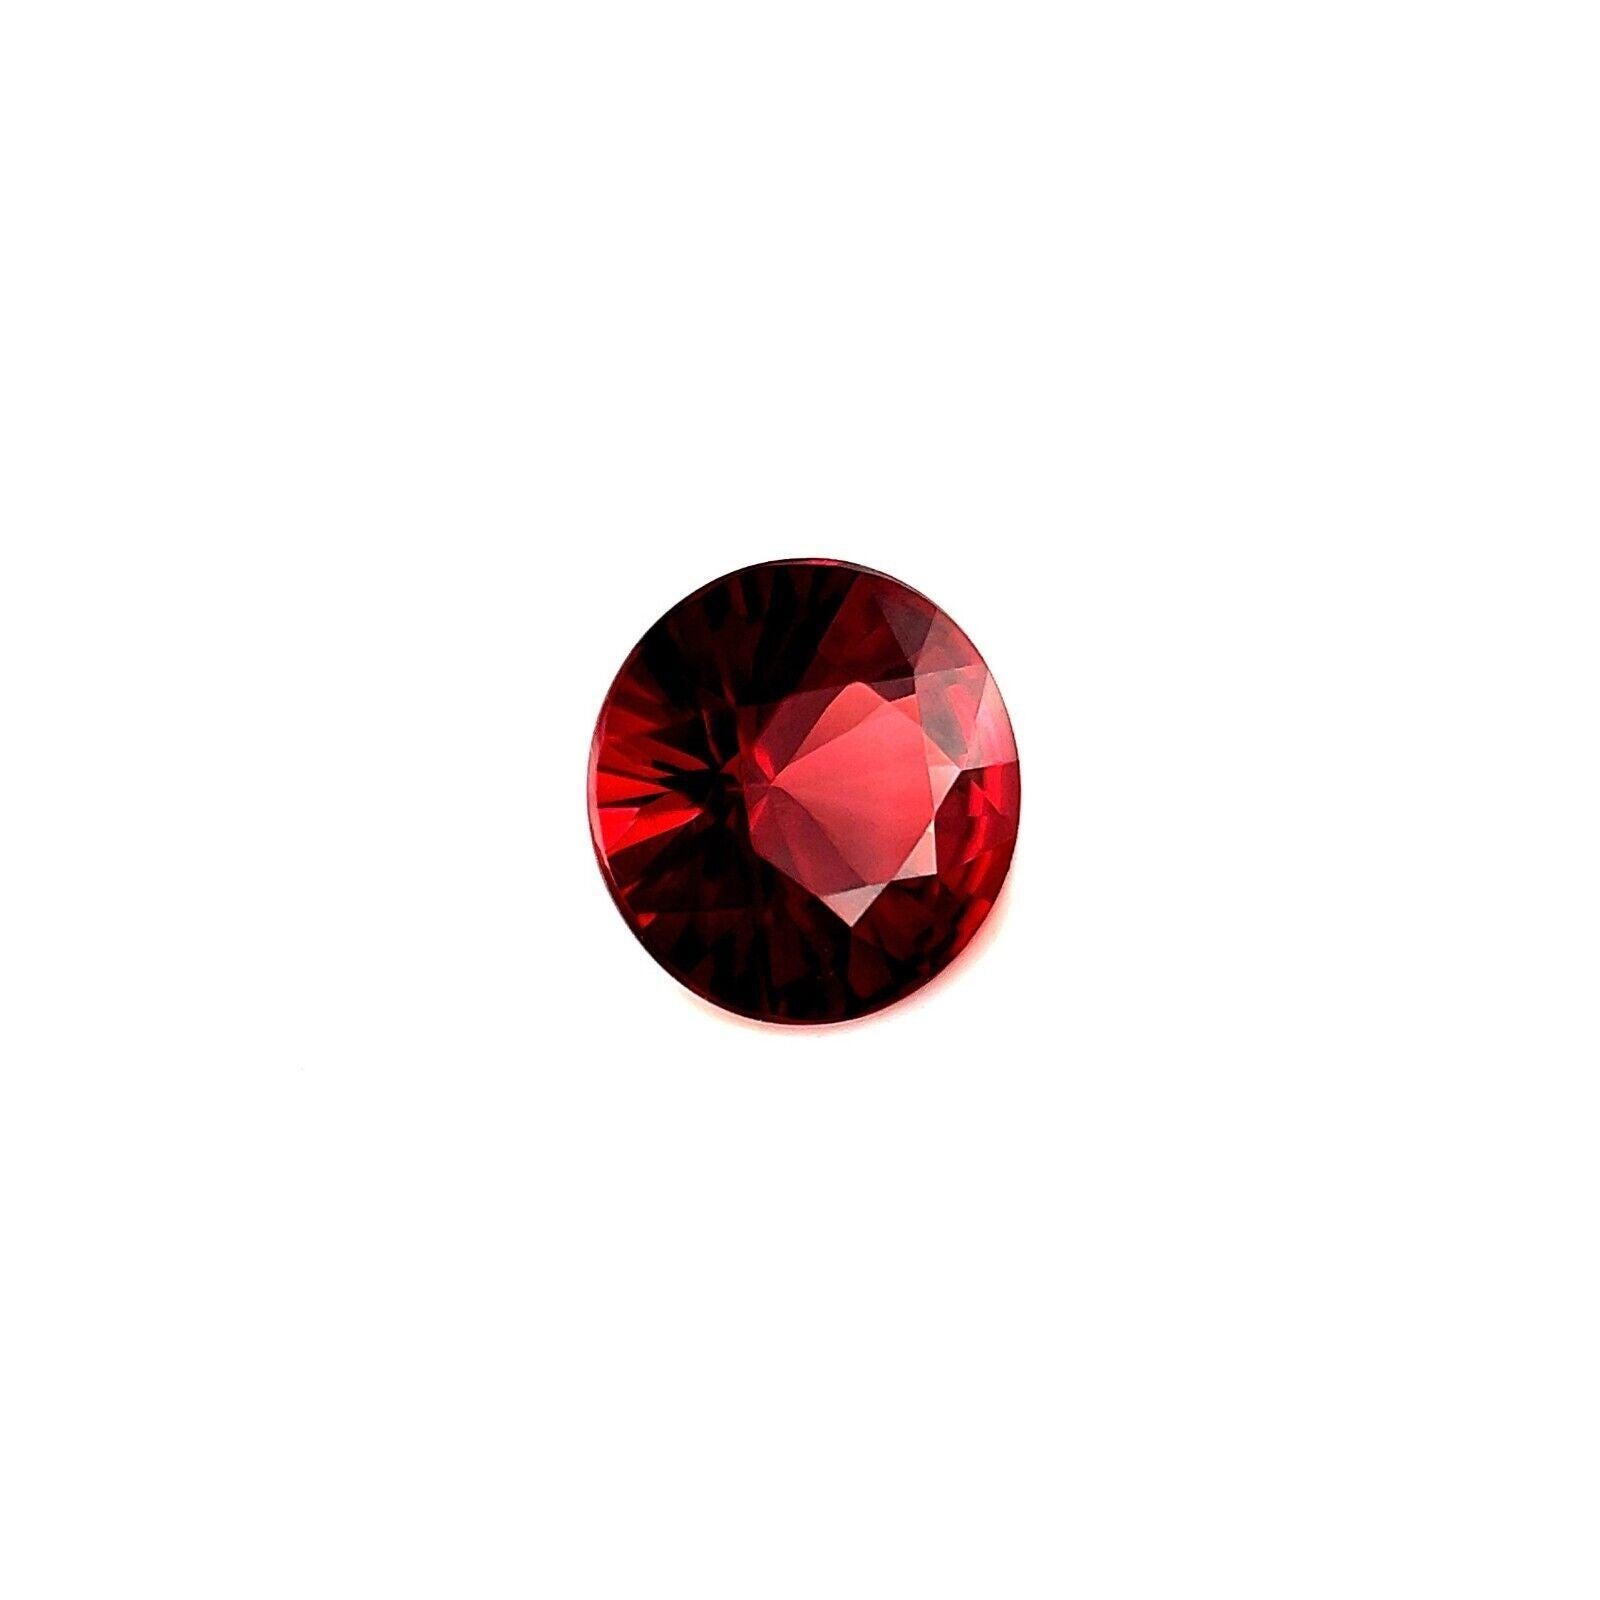 1,89ct Lebendiger Rhodolith-Granat 7,5 mm rot rund Brillantschliff kalibriert

Natürlicher 1,89ct lebhaft roter Rhodolith-Granat.
Hat einen ausgezeichneten runden Brillantschliff und eine sehr gute bis ausgezeichnete Reinheit, VS. Der Stein hat eine